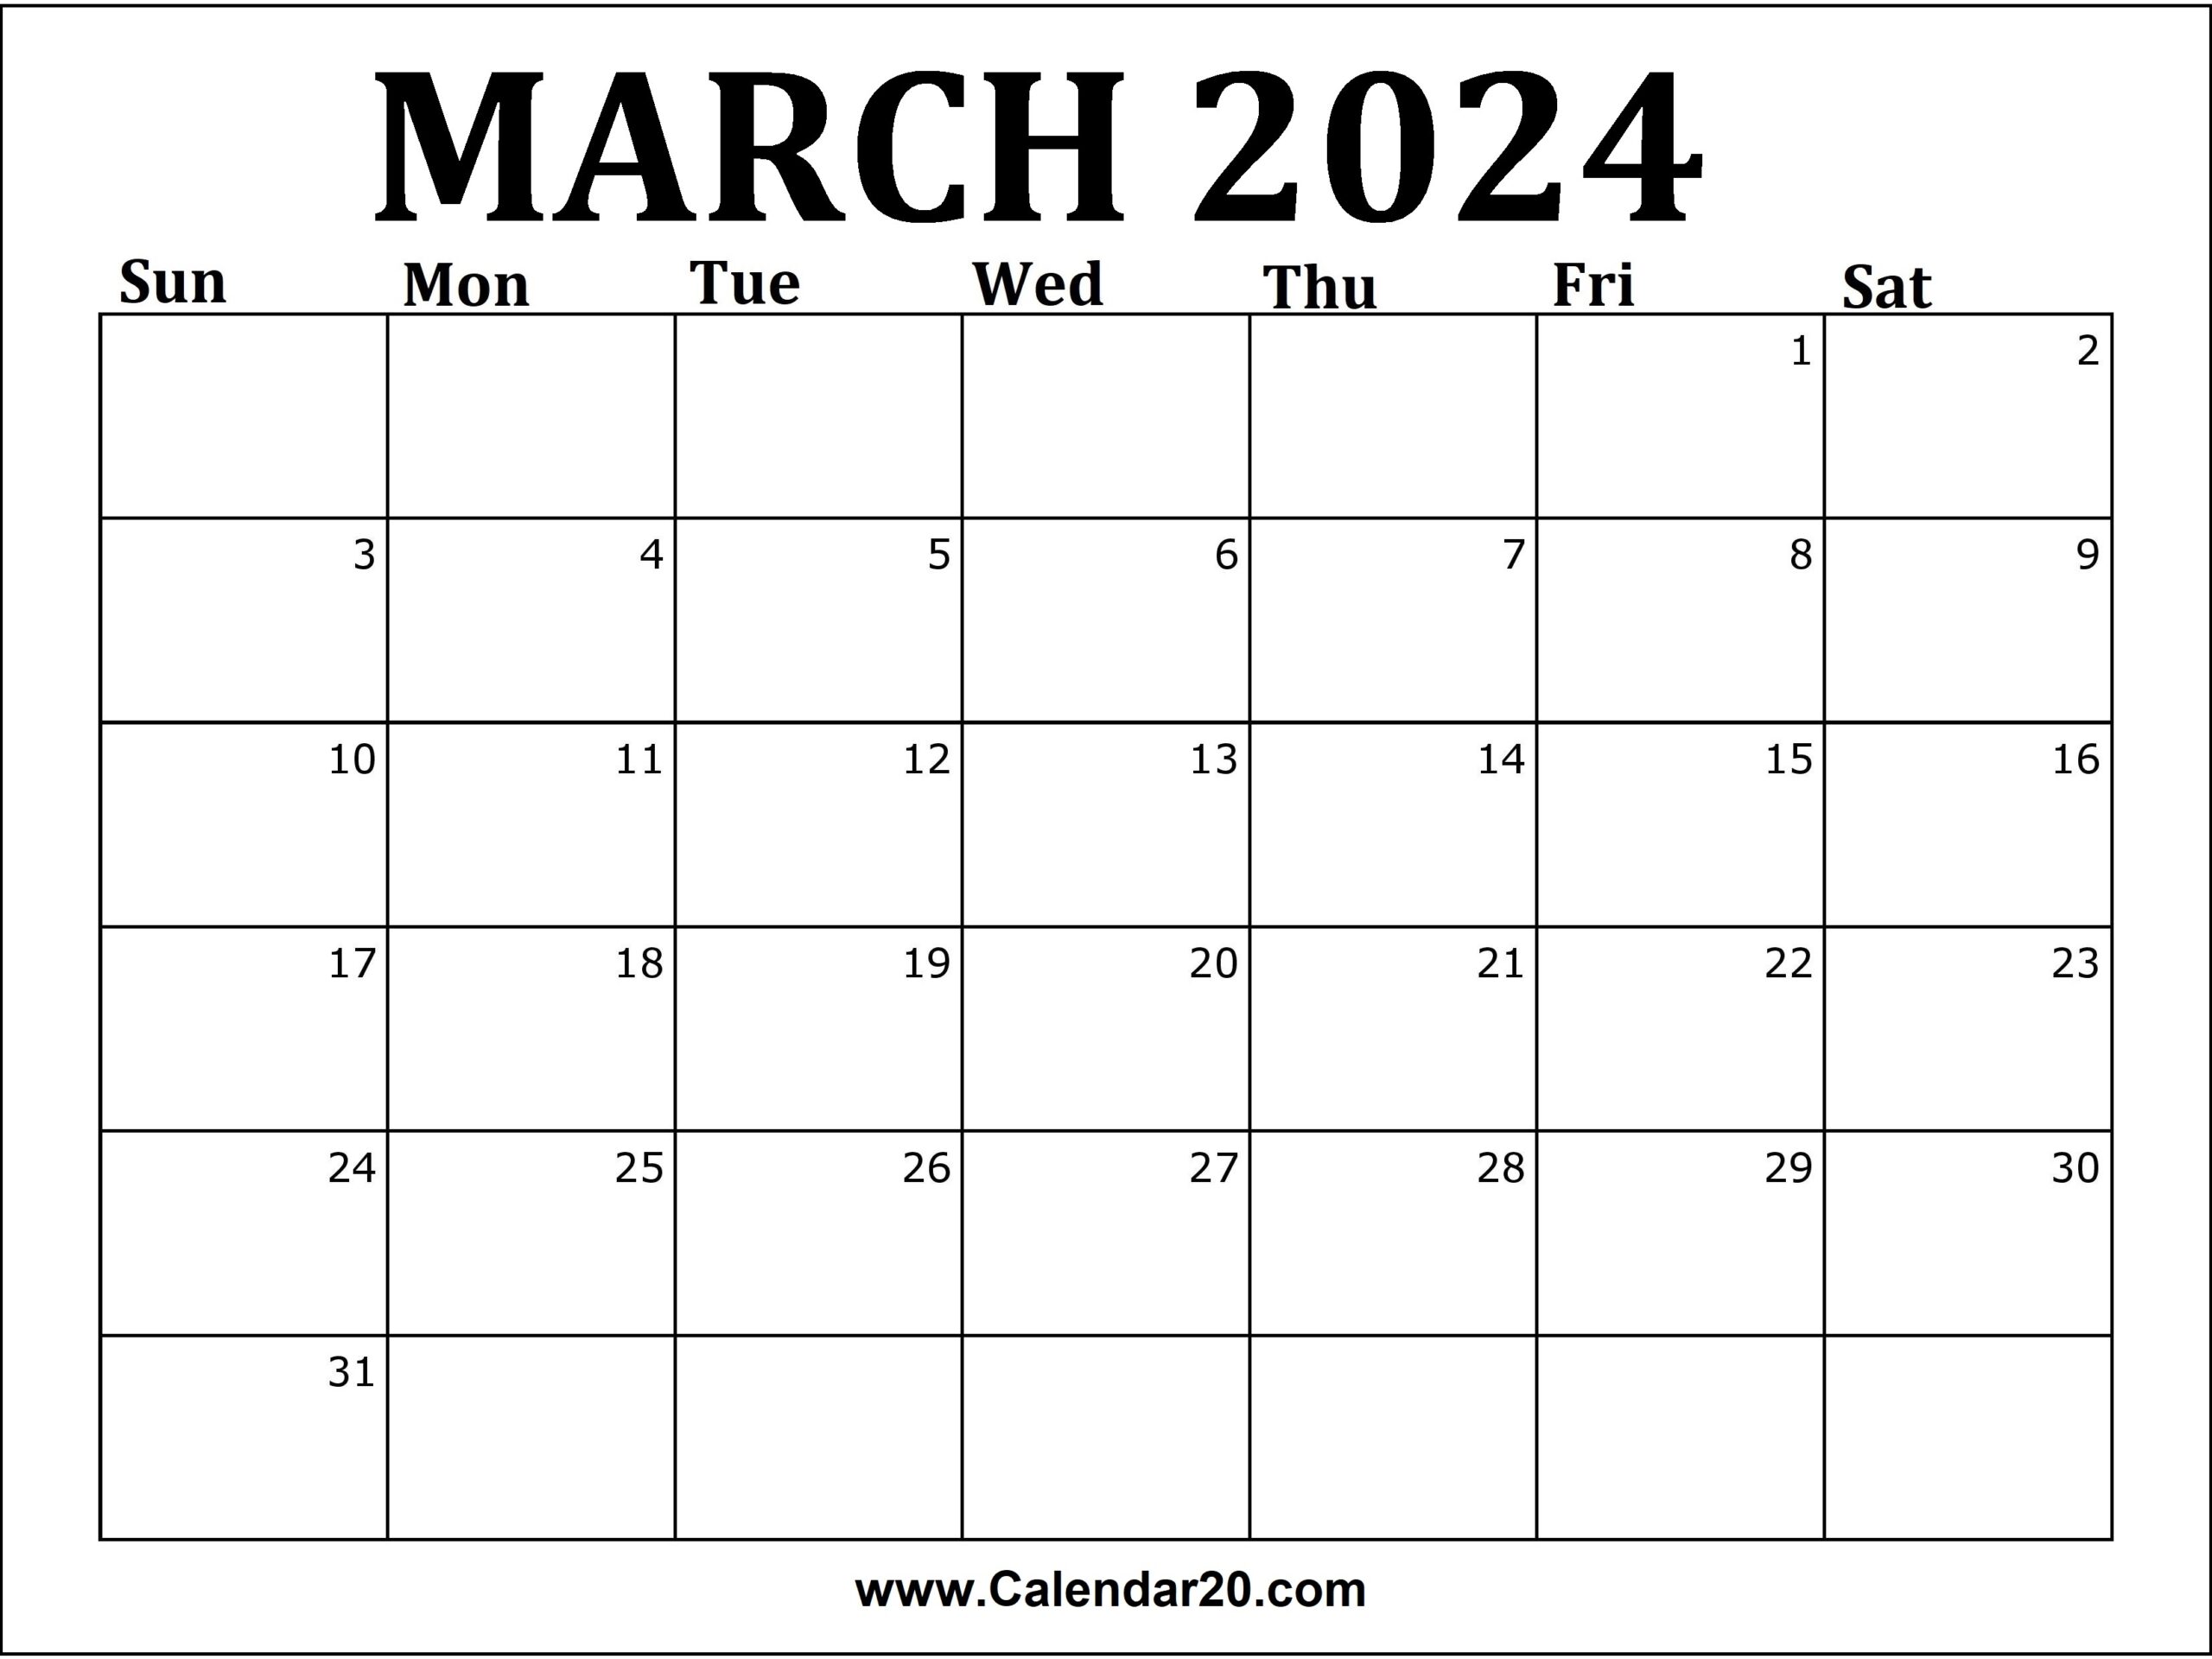 March 2024 Printable Calendar Calendar20